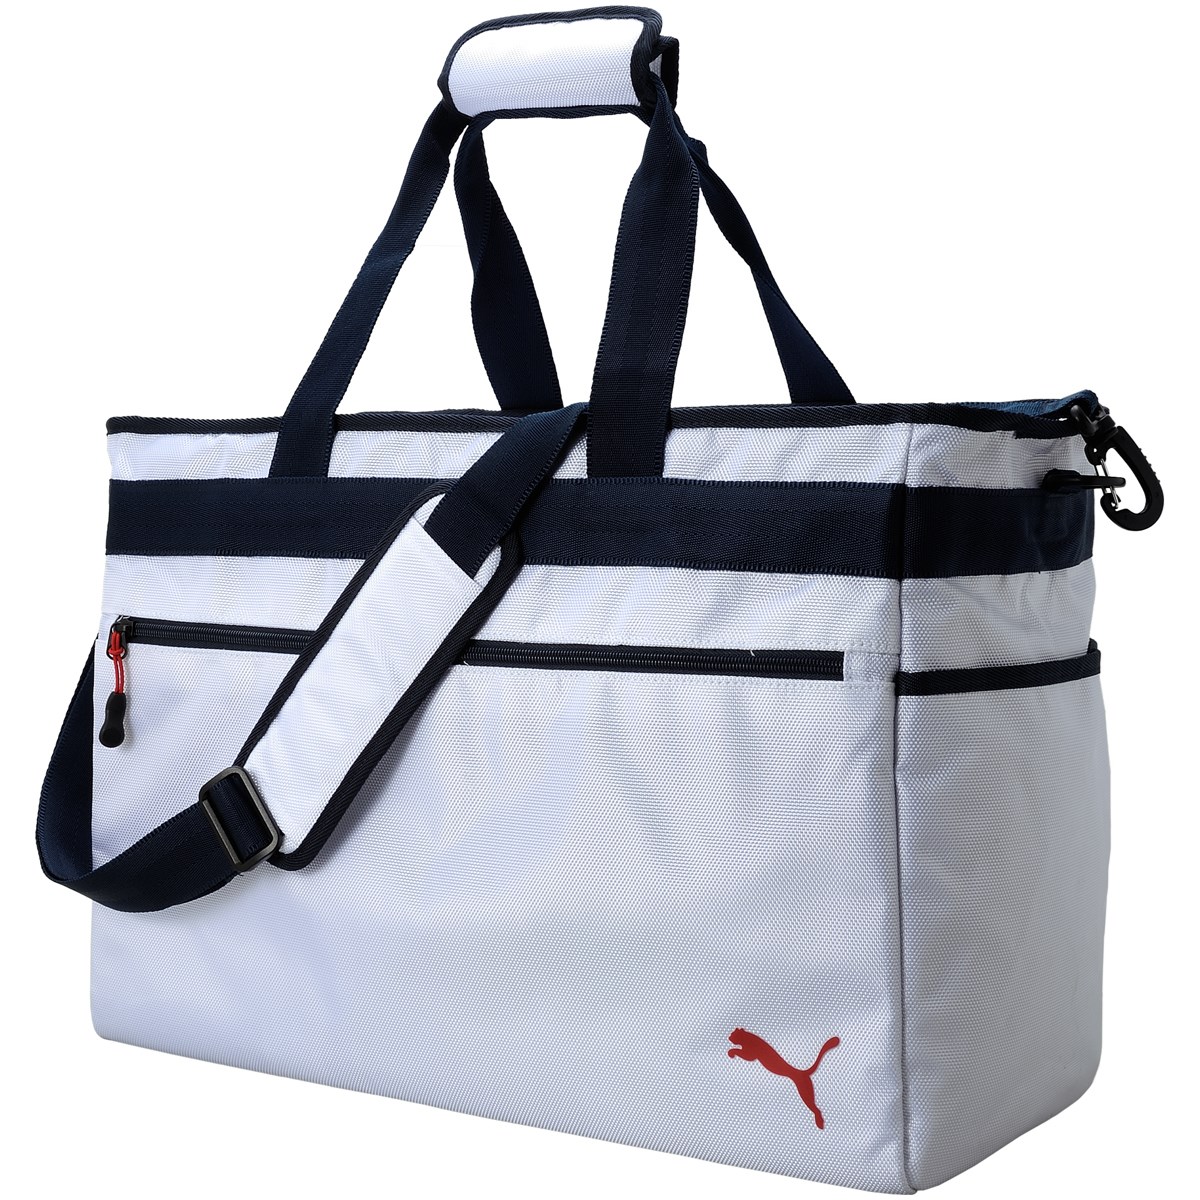 人気定番の USモデル PUMA プーマ ゴルフ ダッフルバッグ ボストンバッグ 075032-01 Duffle Bag